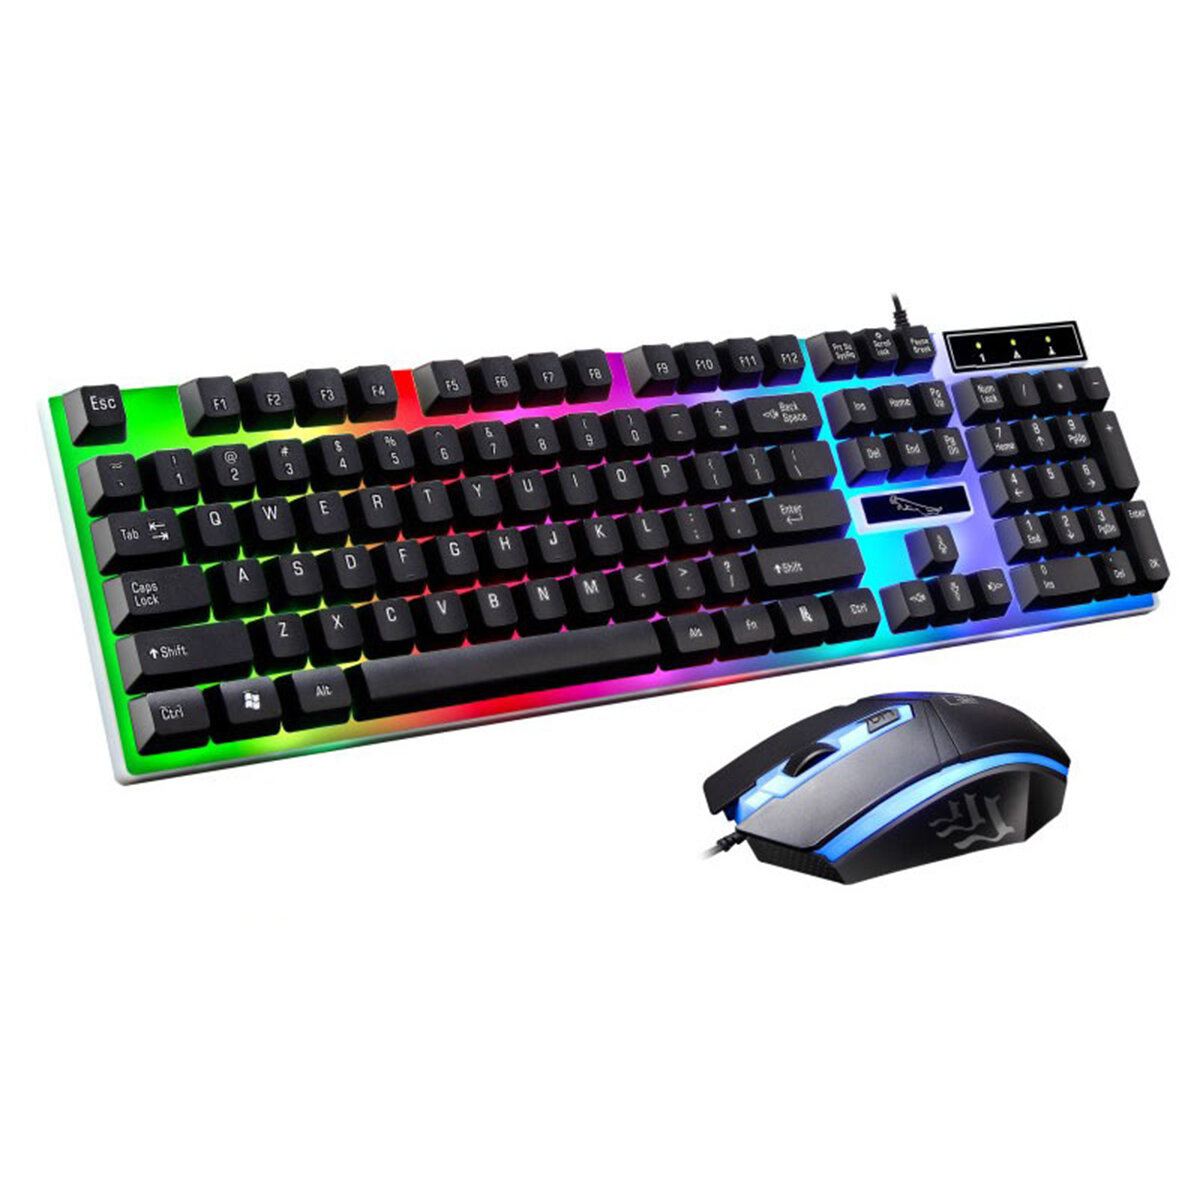 

G21 104 ключей, проводной Клавиатура и Мышь Набор LED Colorful Подсветка Механический Feel Gaming Клавиатура для домашне